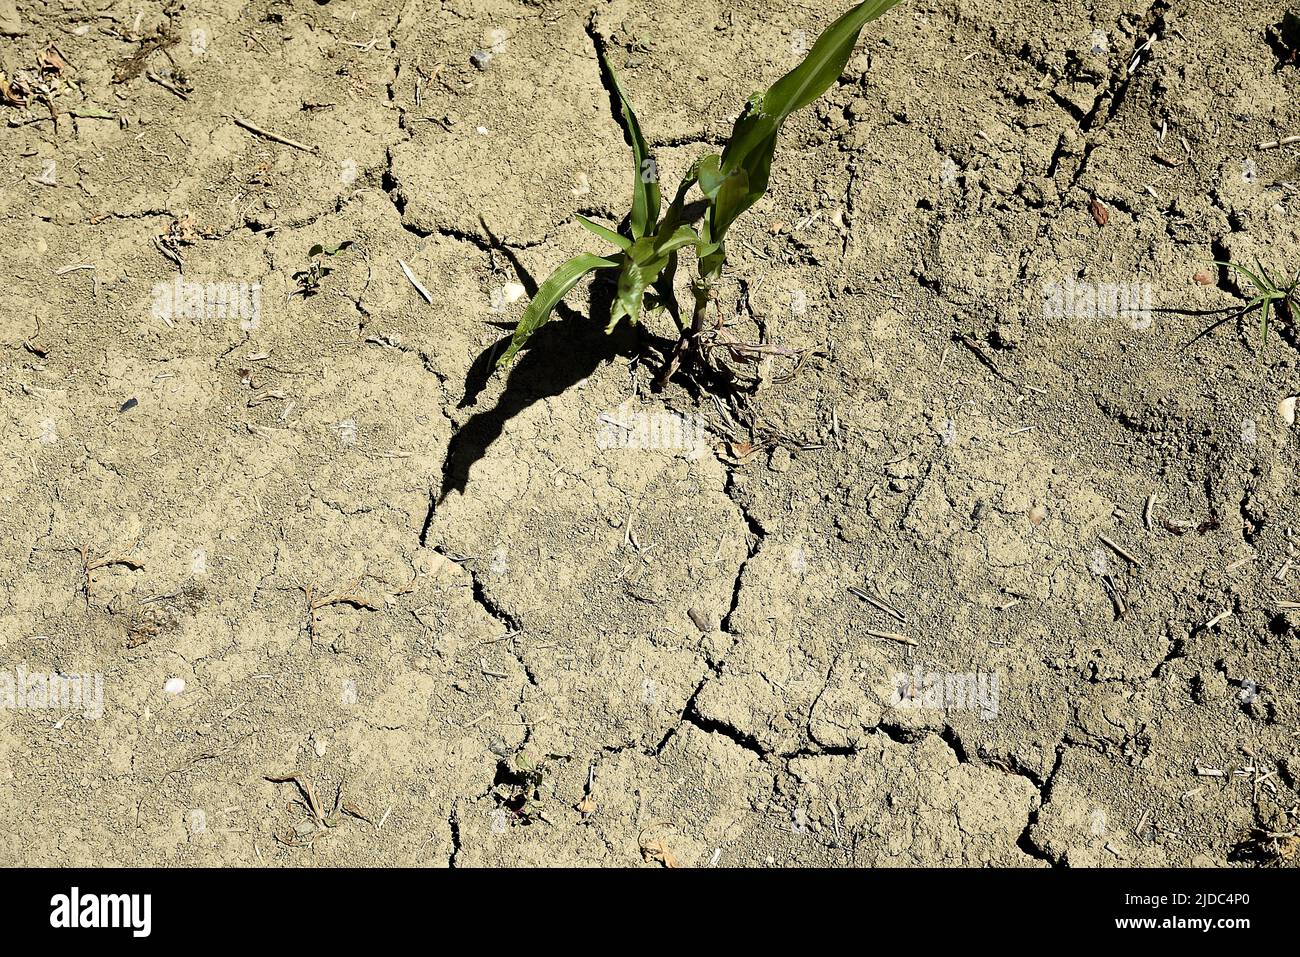 La sécheresse et les températures tropicales causent des dommages aux agriculteurs, Balance, 19 juin 2022. Banque D'Images